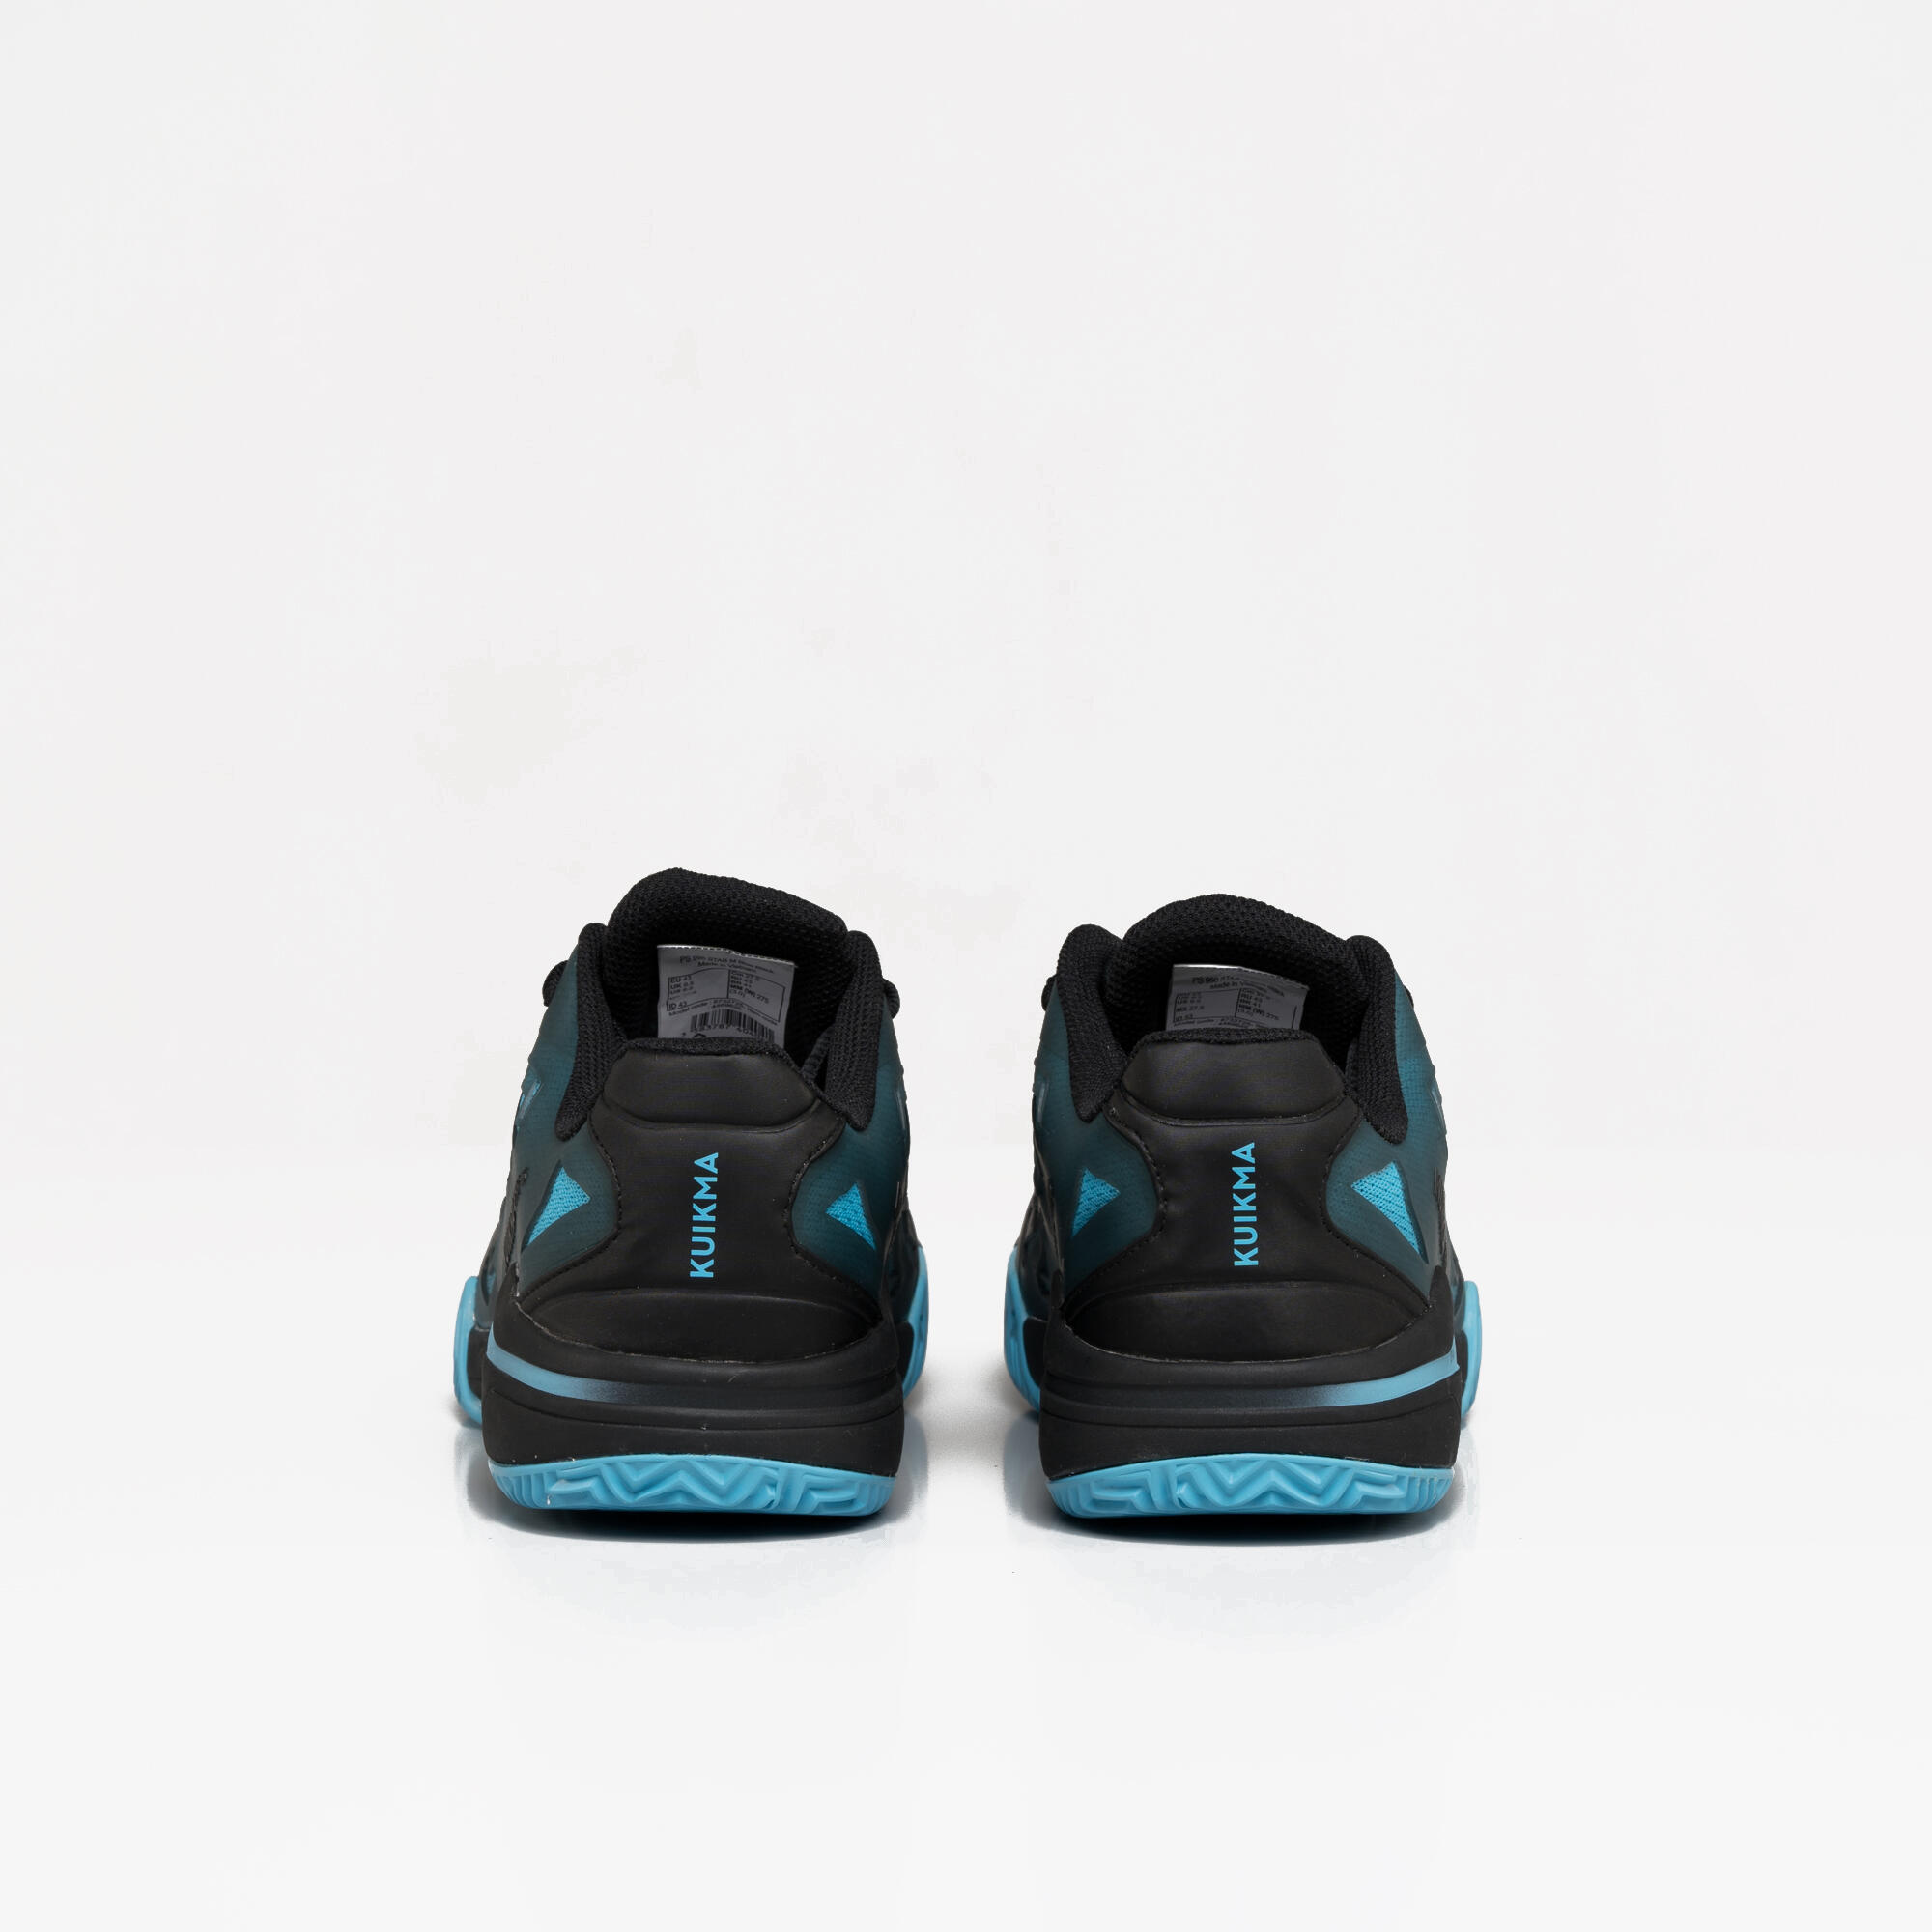 Men's Padel Shoes PS 990 Stability - Blue/Black 6/7